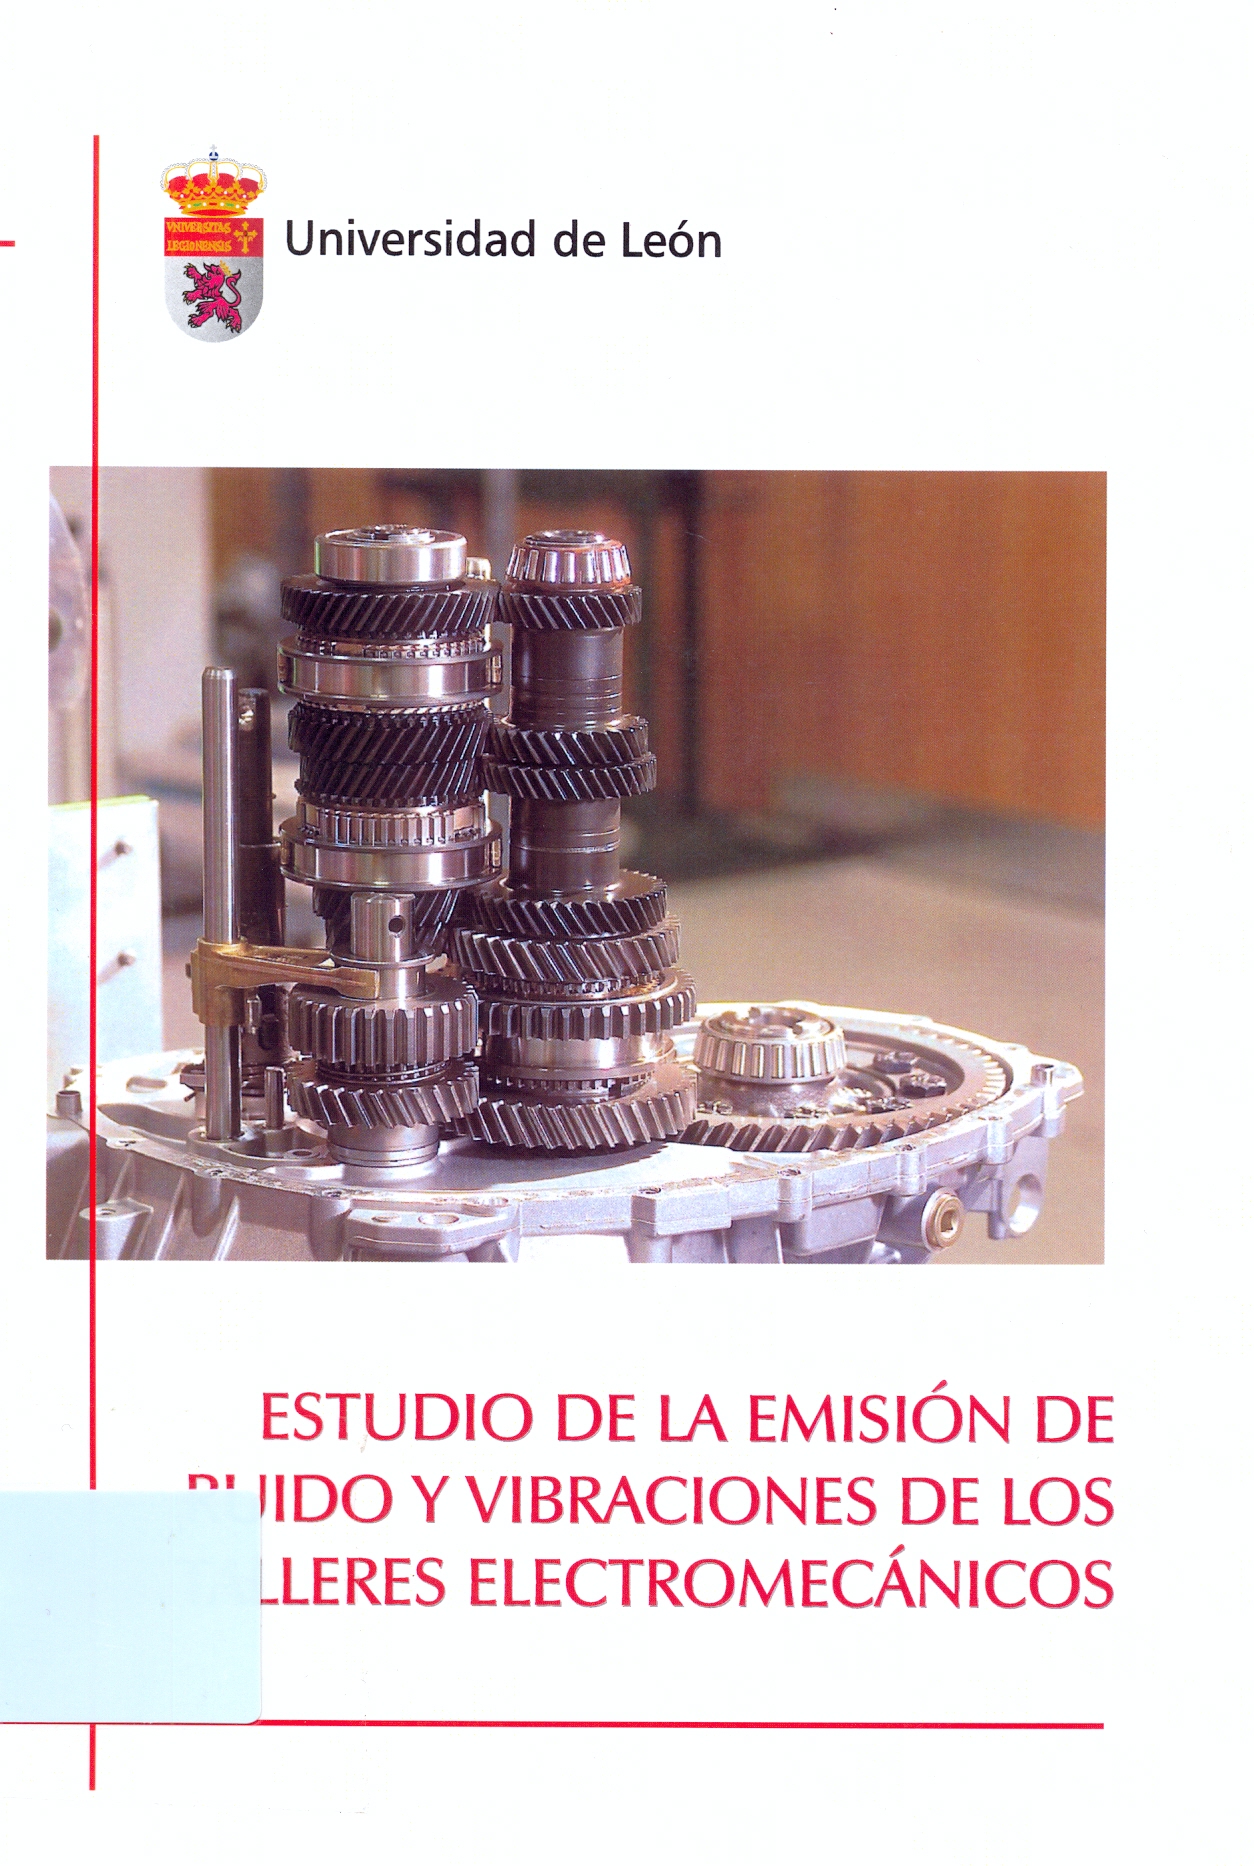 Imagen de portada del libro Estudio de la emisión de ruido y vibraciones de los talleres electromecánicos